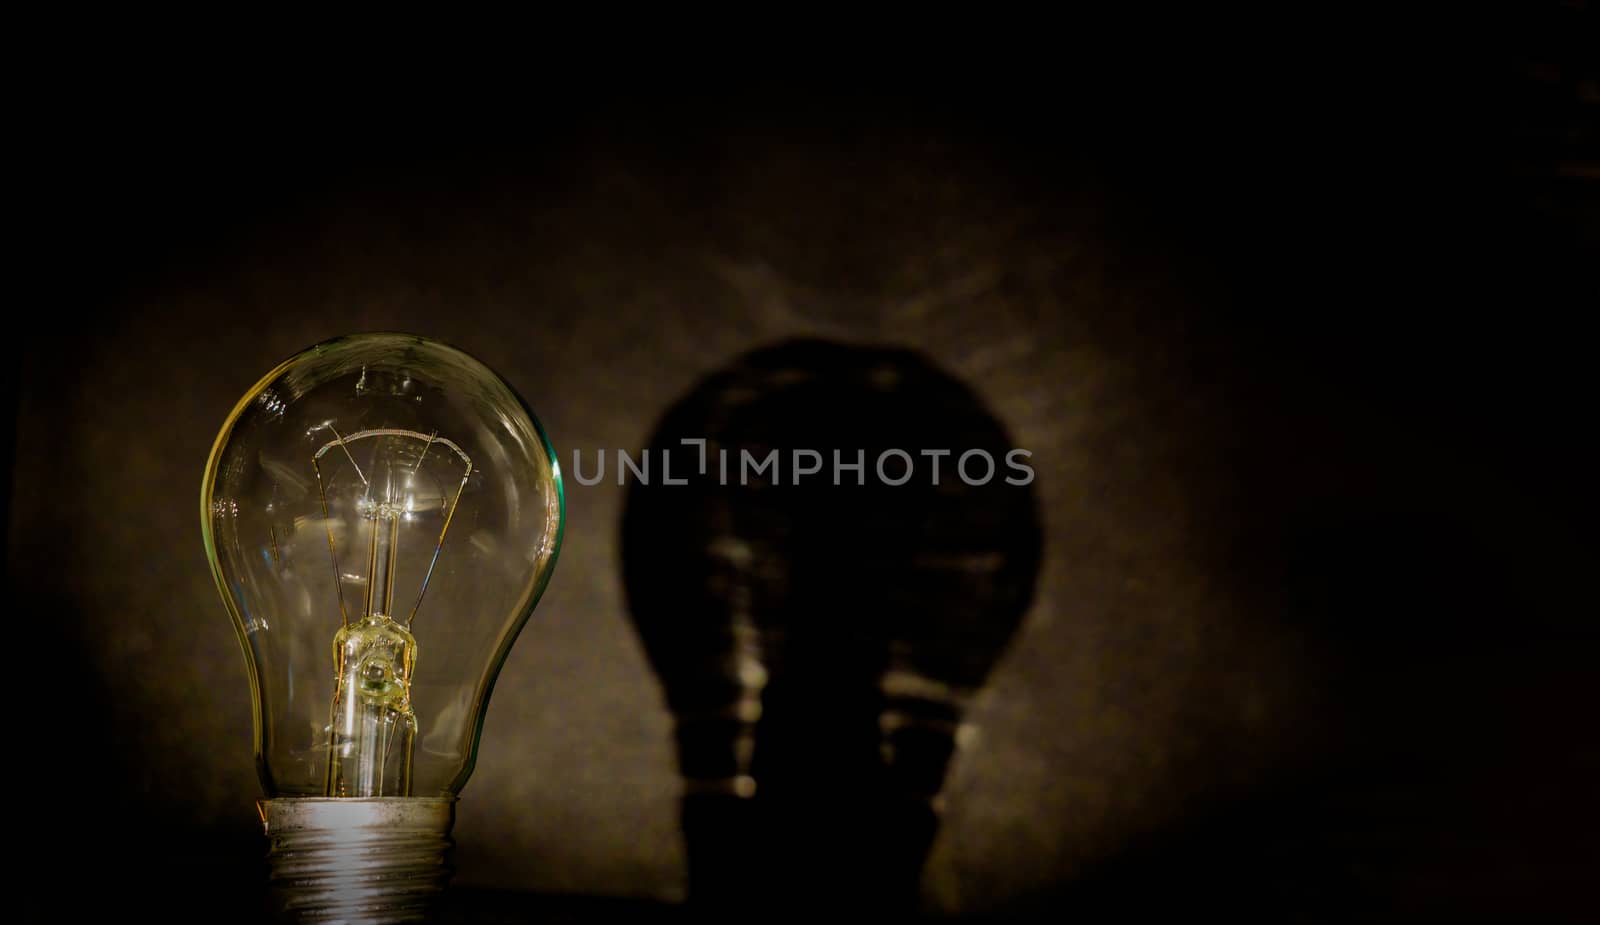 Light bulb, business idea concept. A light bulb on a black backg by YevgeniySam